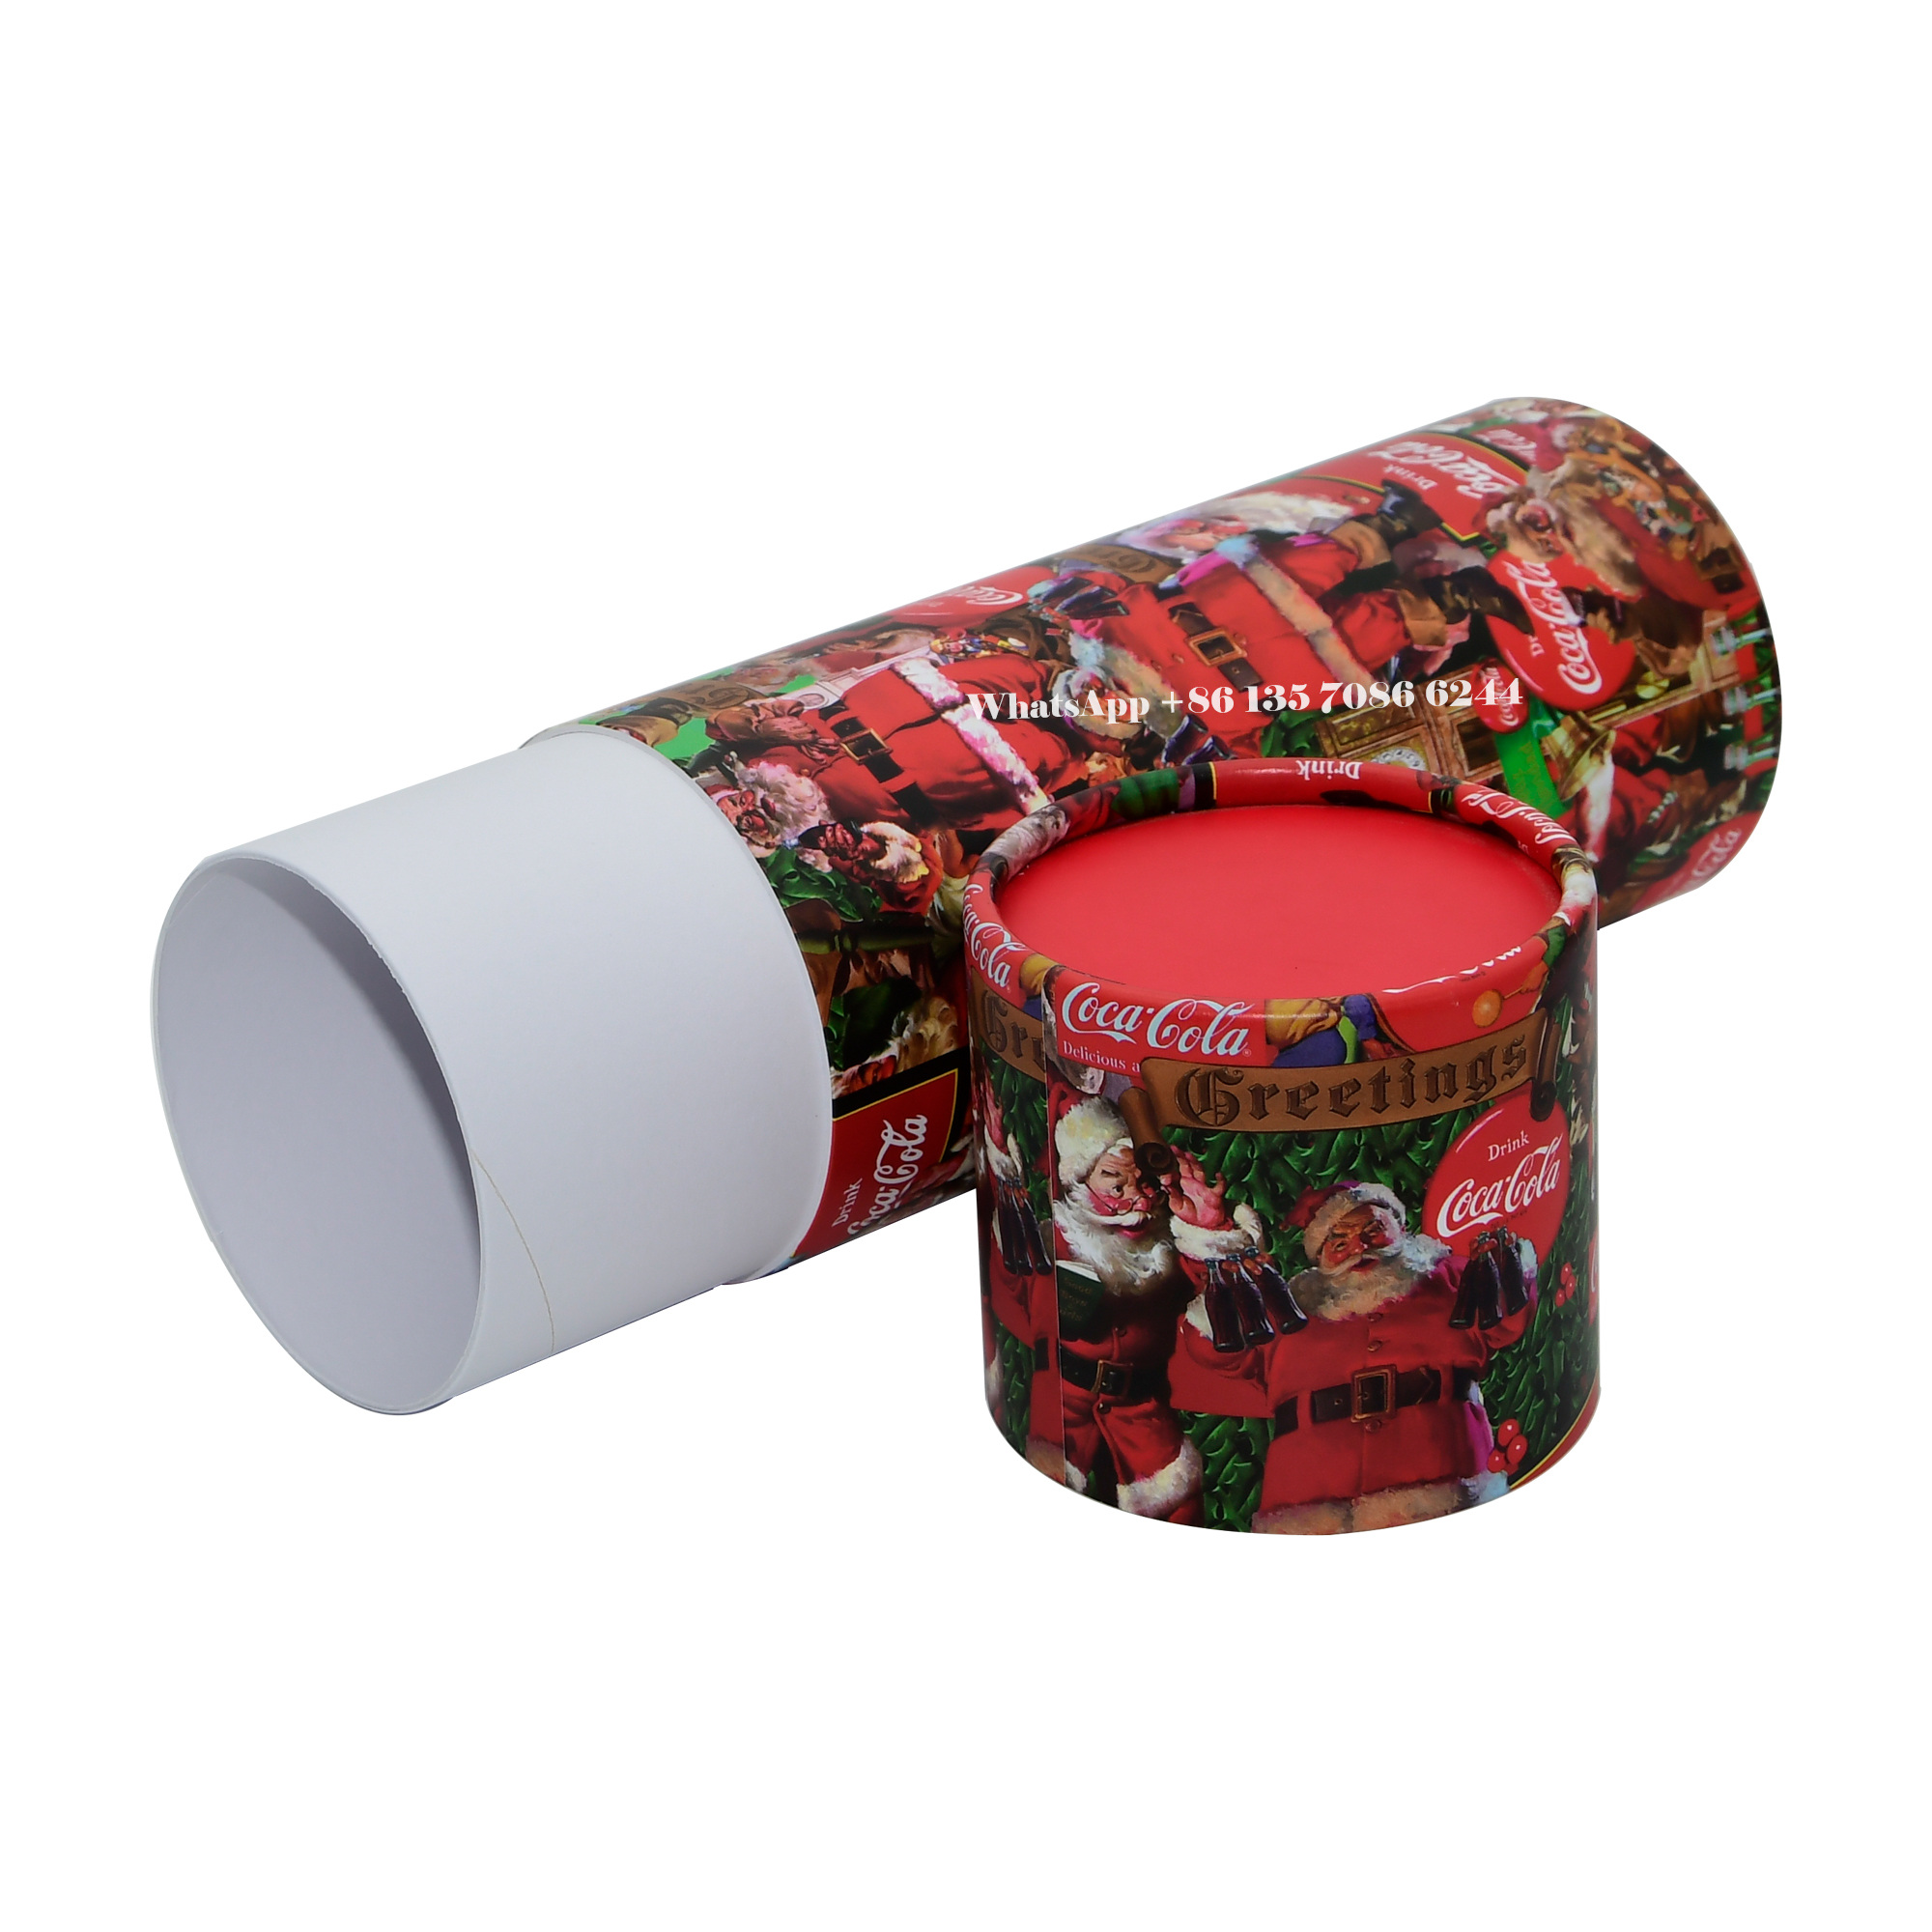  賑やかなクリスマスエディションのコカ・コーラ ペーパーチューブパッケージングボックス  